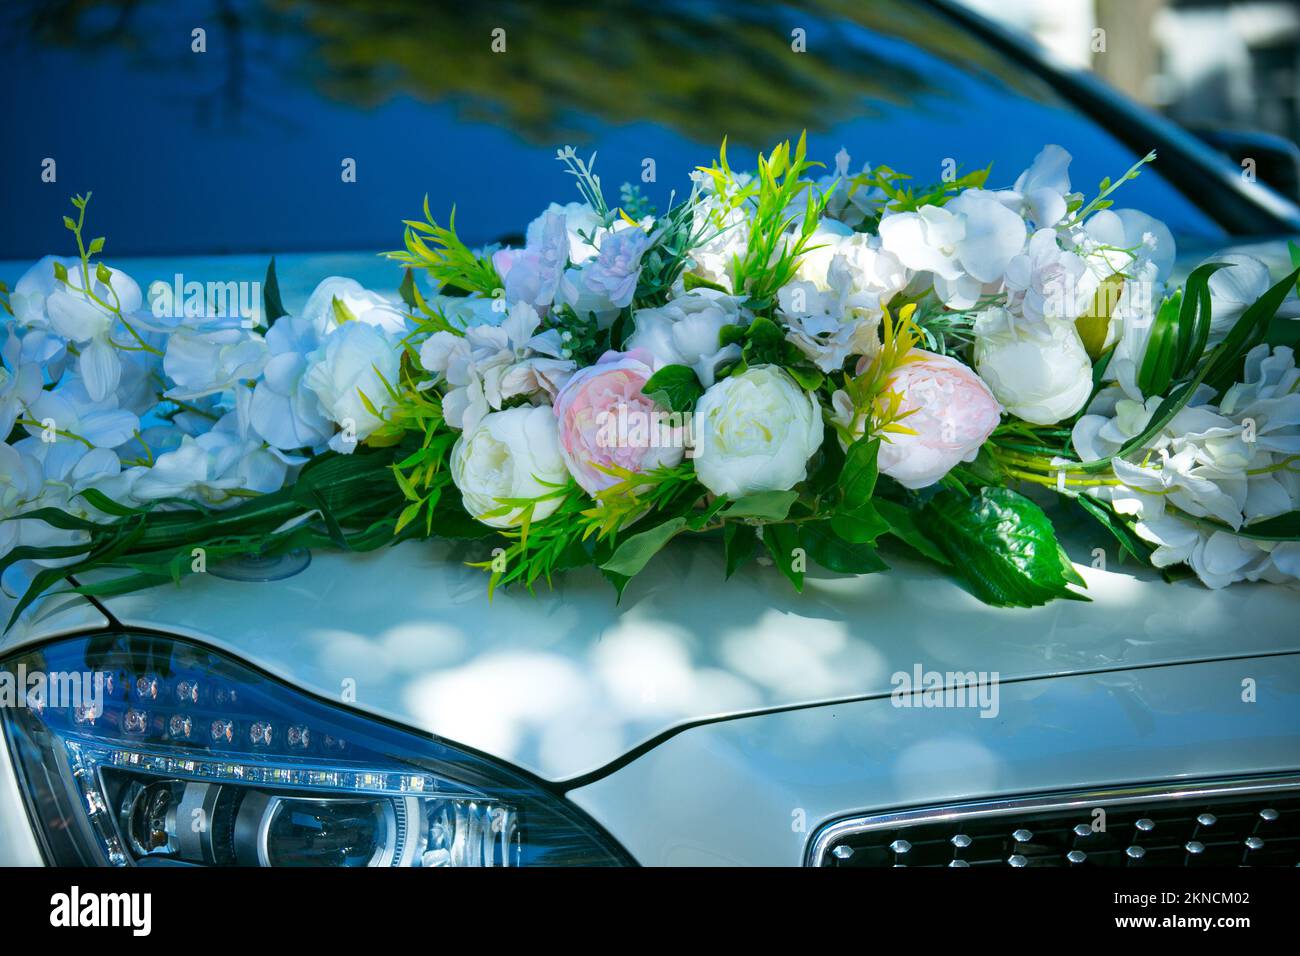 https://c8.alamy.com/compfr/2kncm02/voiture-de-mariage-avec-de-belles-decorations-decoration-fleurie-2kncm02.jpg